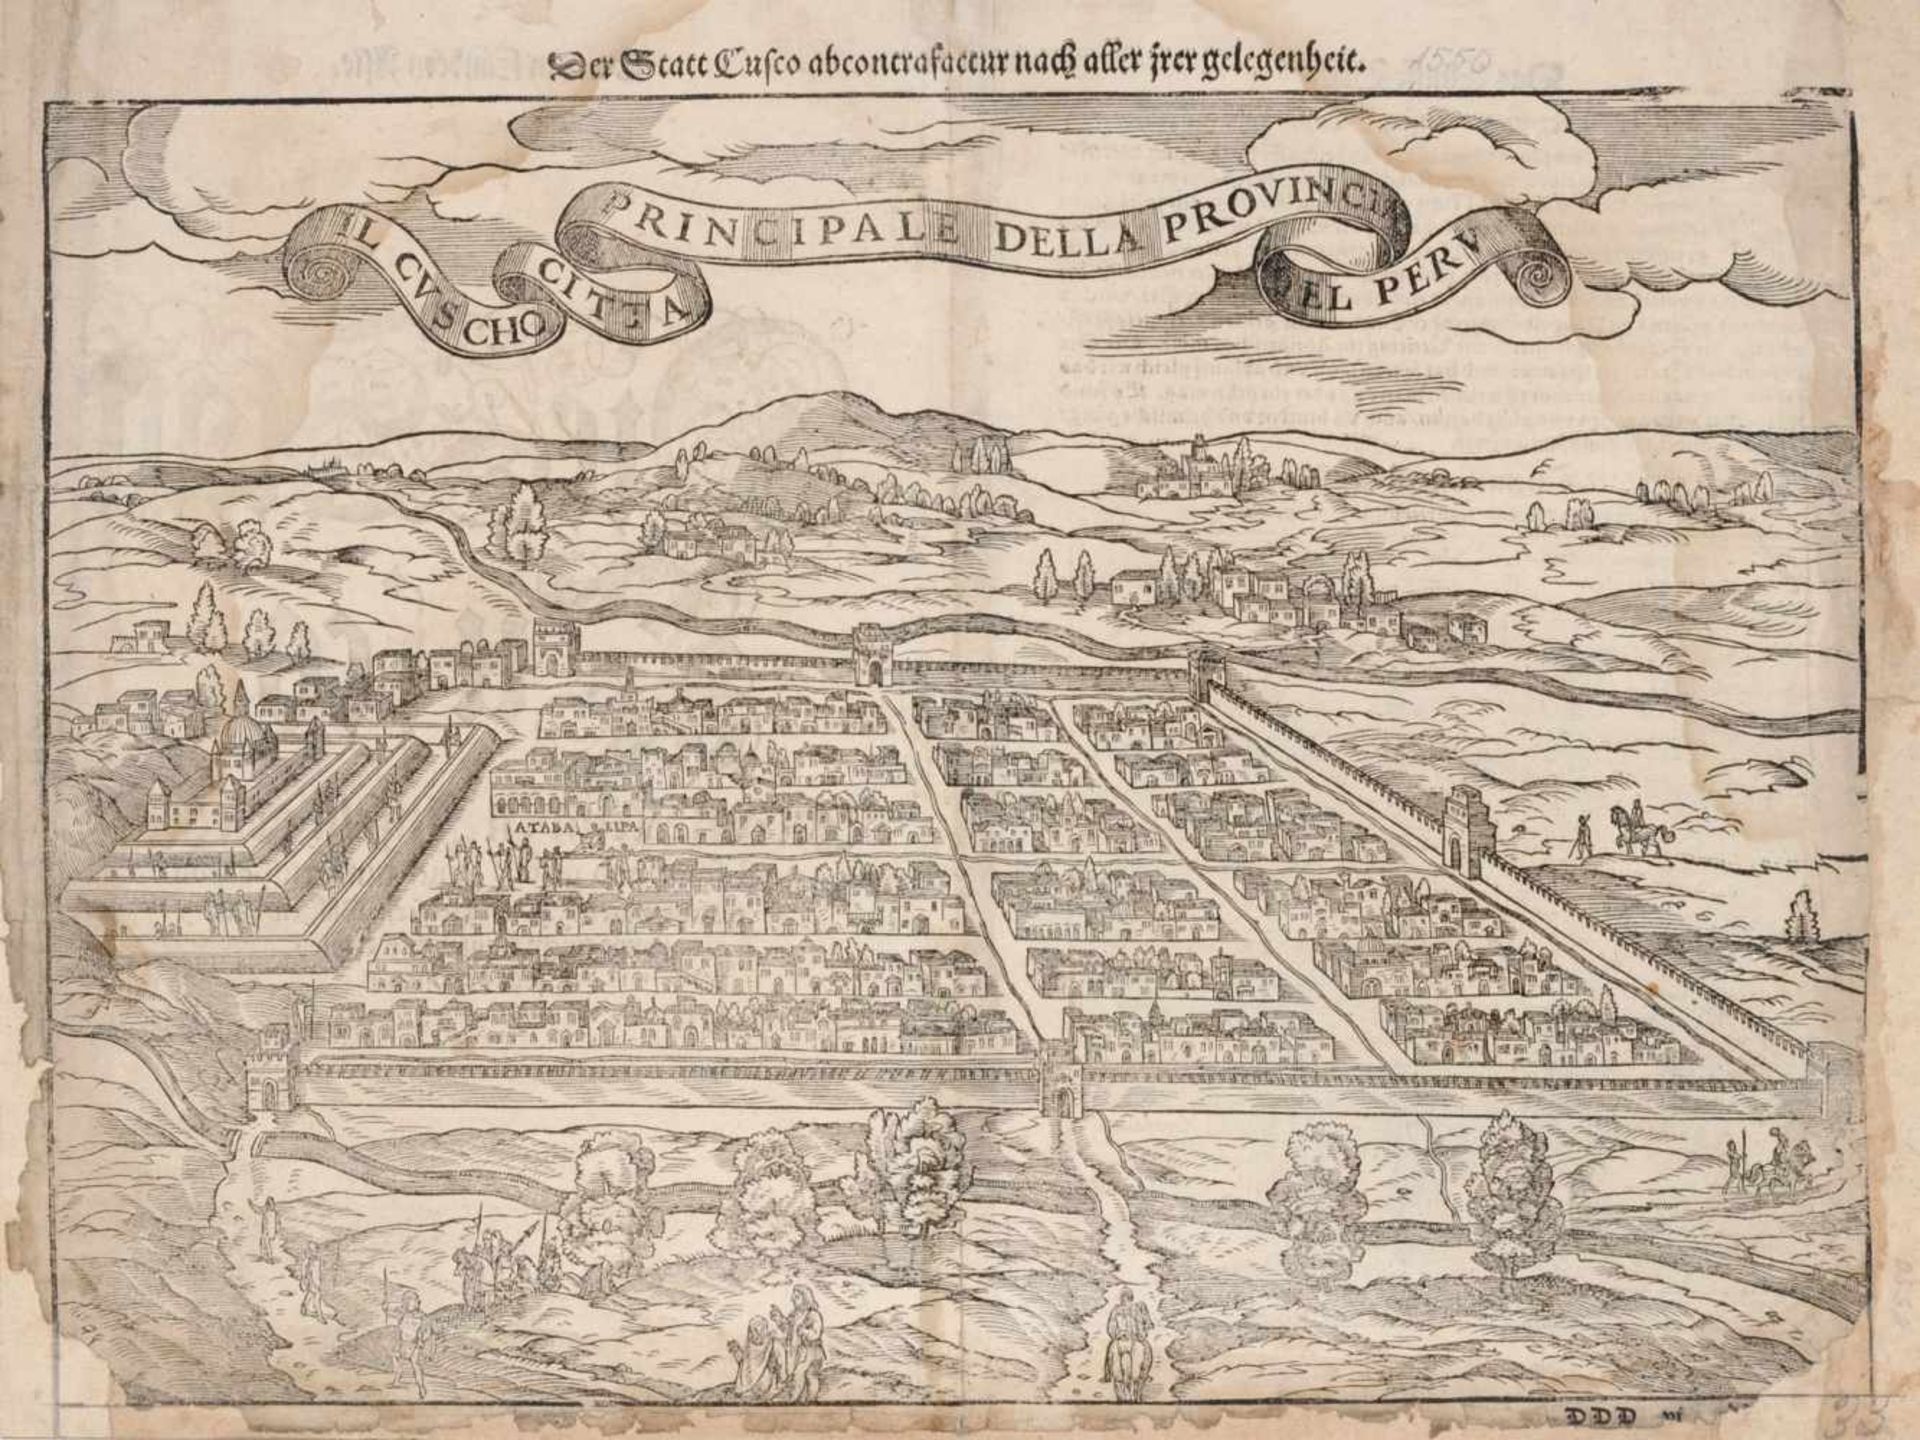 Sebastian Münster "Il Cusco Citta Principale della Provincia del Peru". Nach 1556.Sebastian